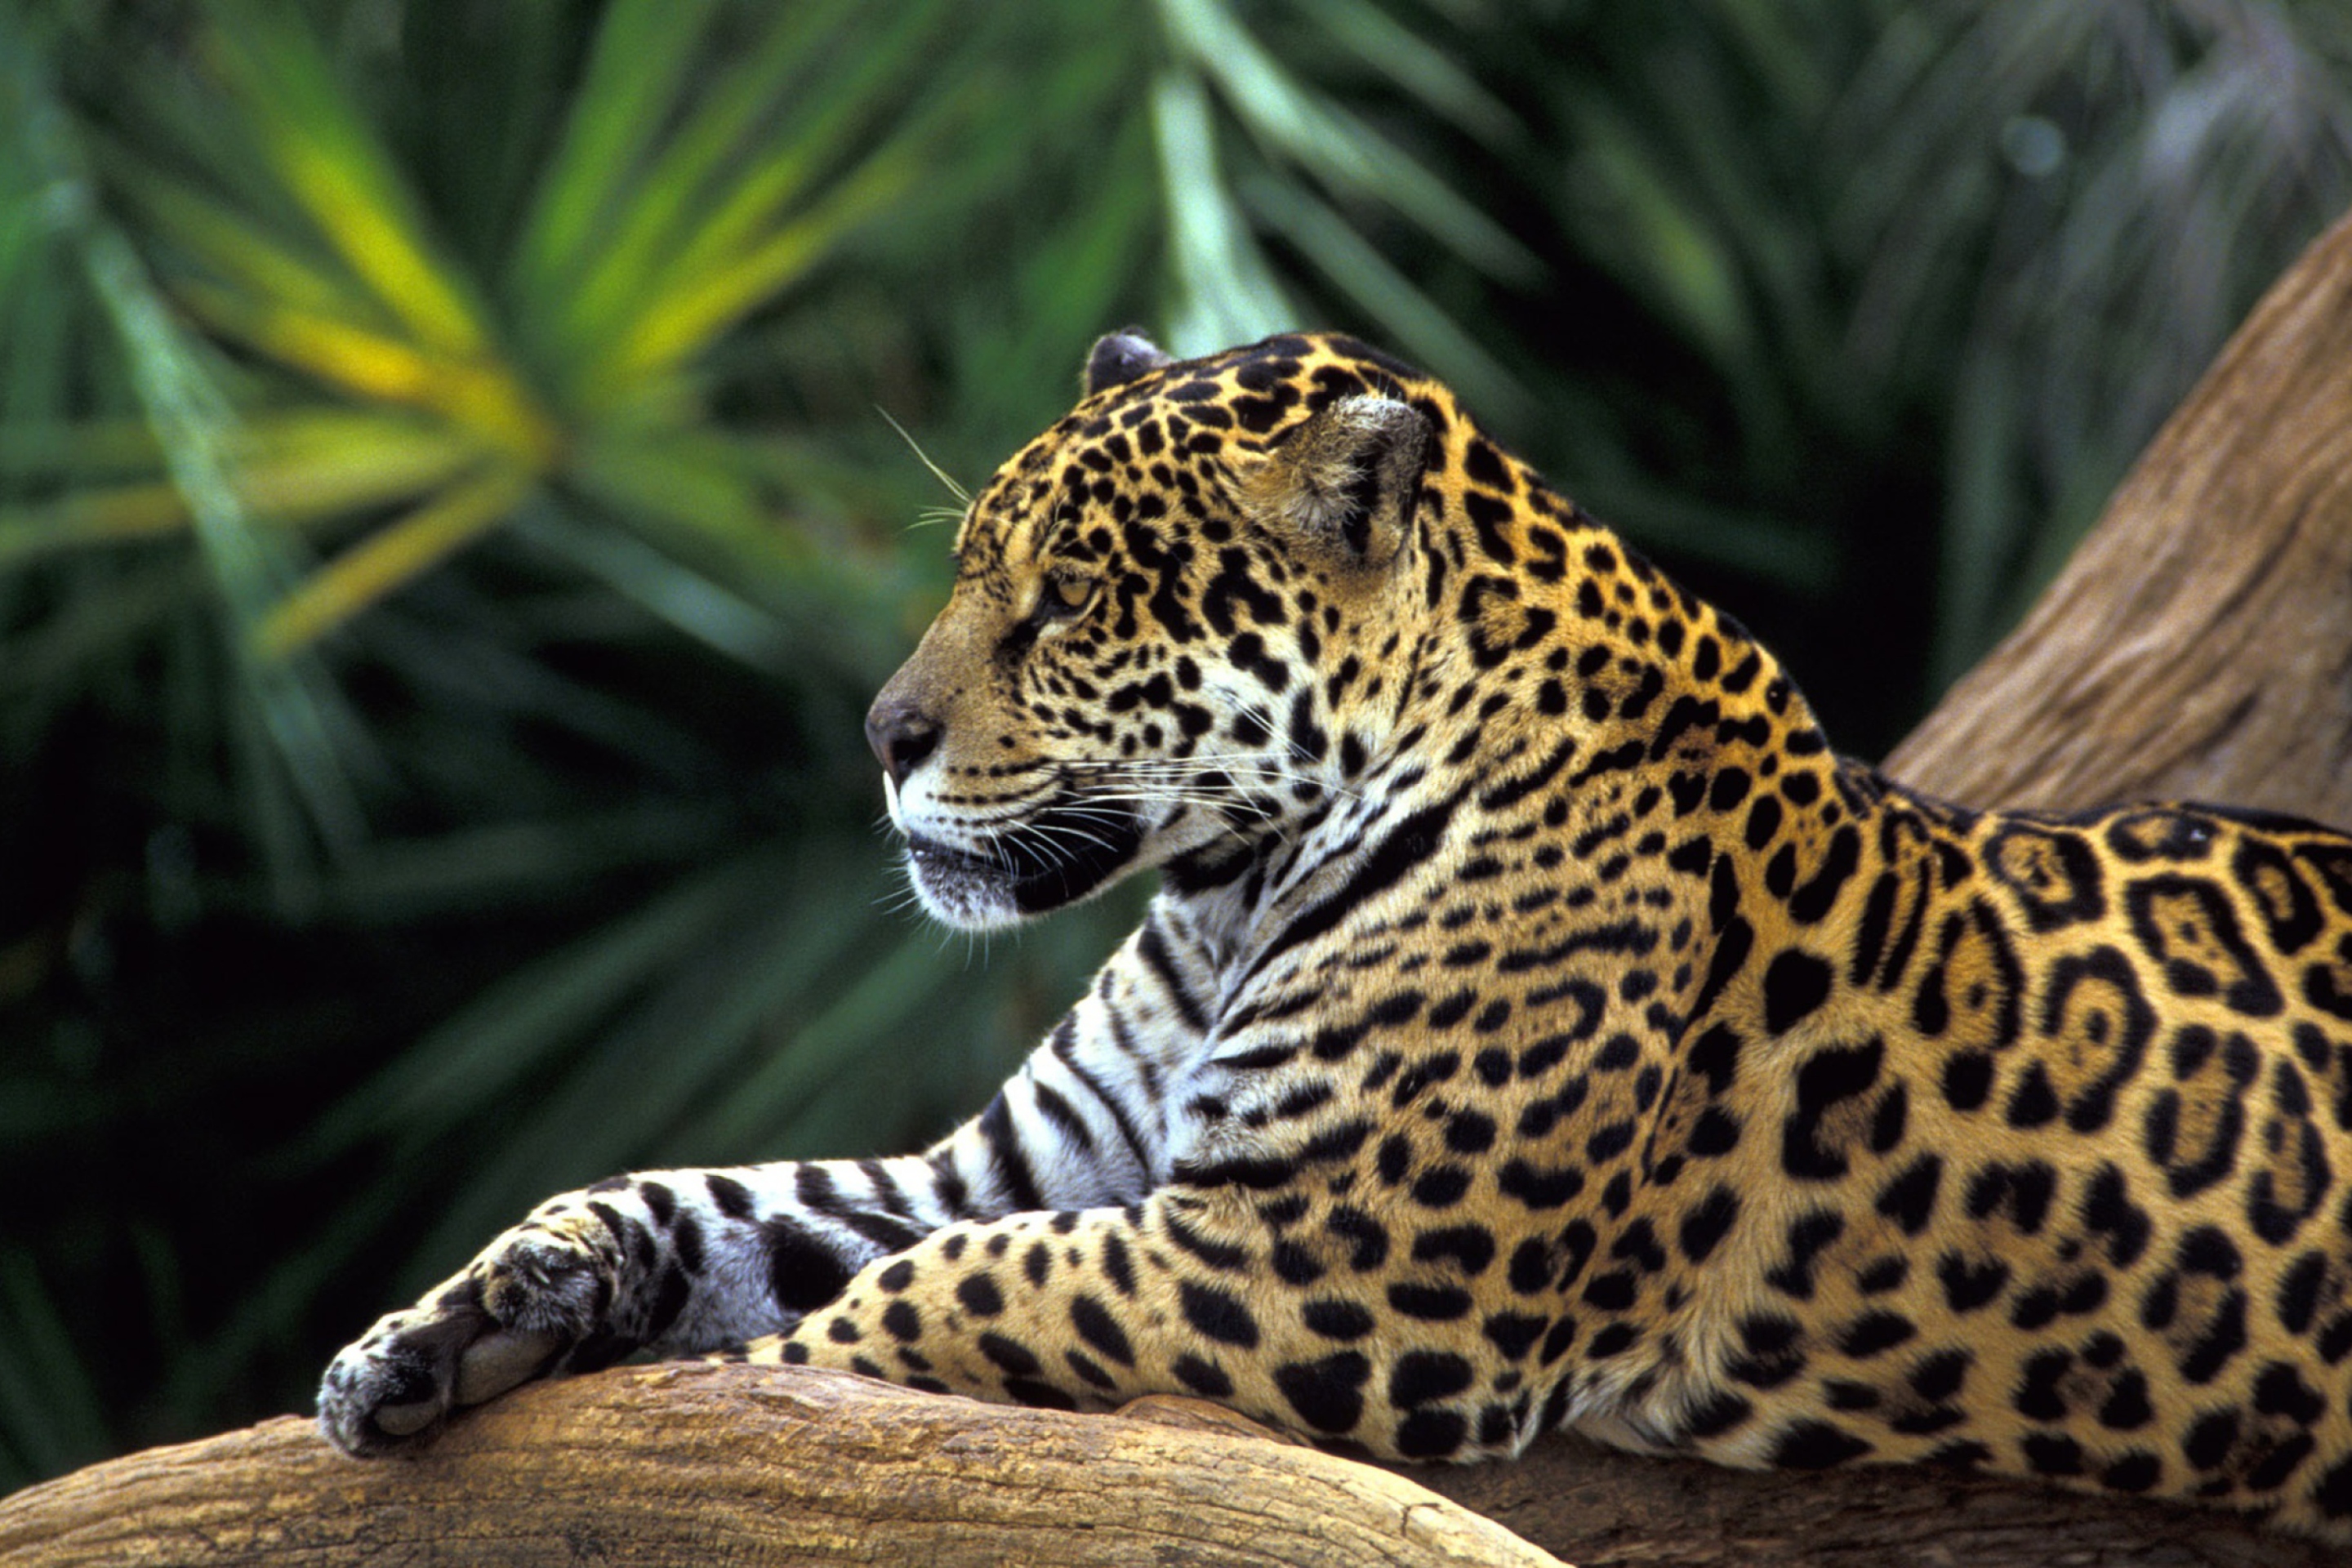 Обои Jaguar In Amazon Rainforest 2880x1920